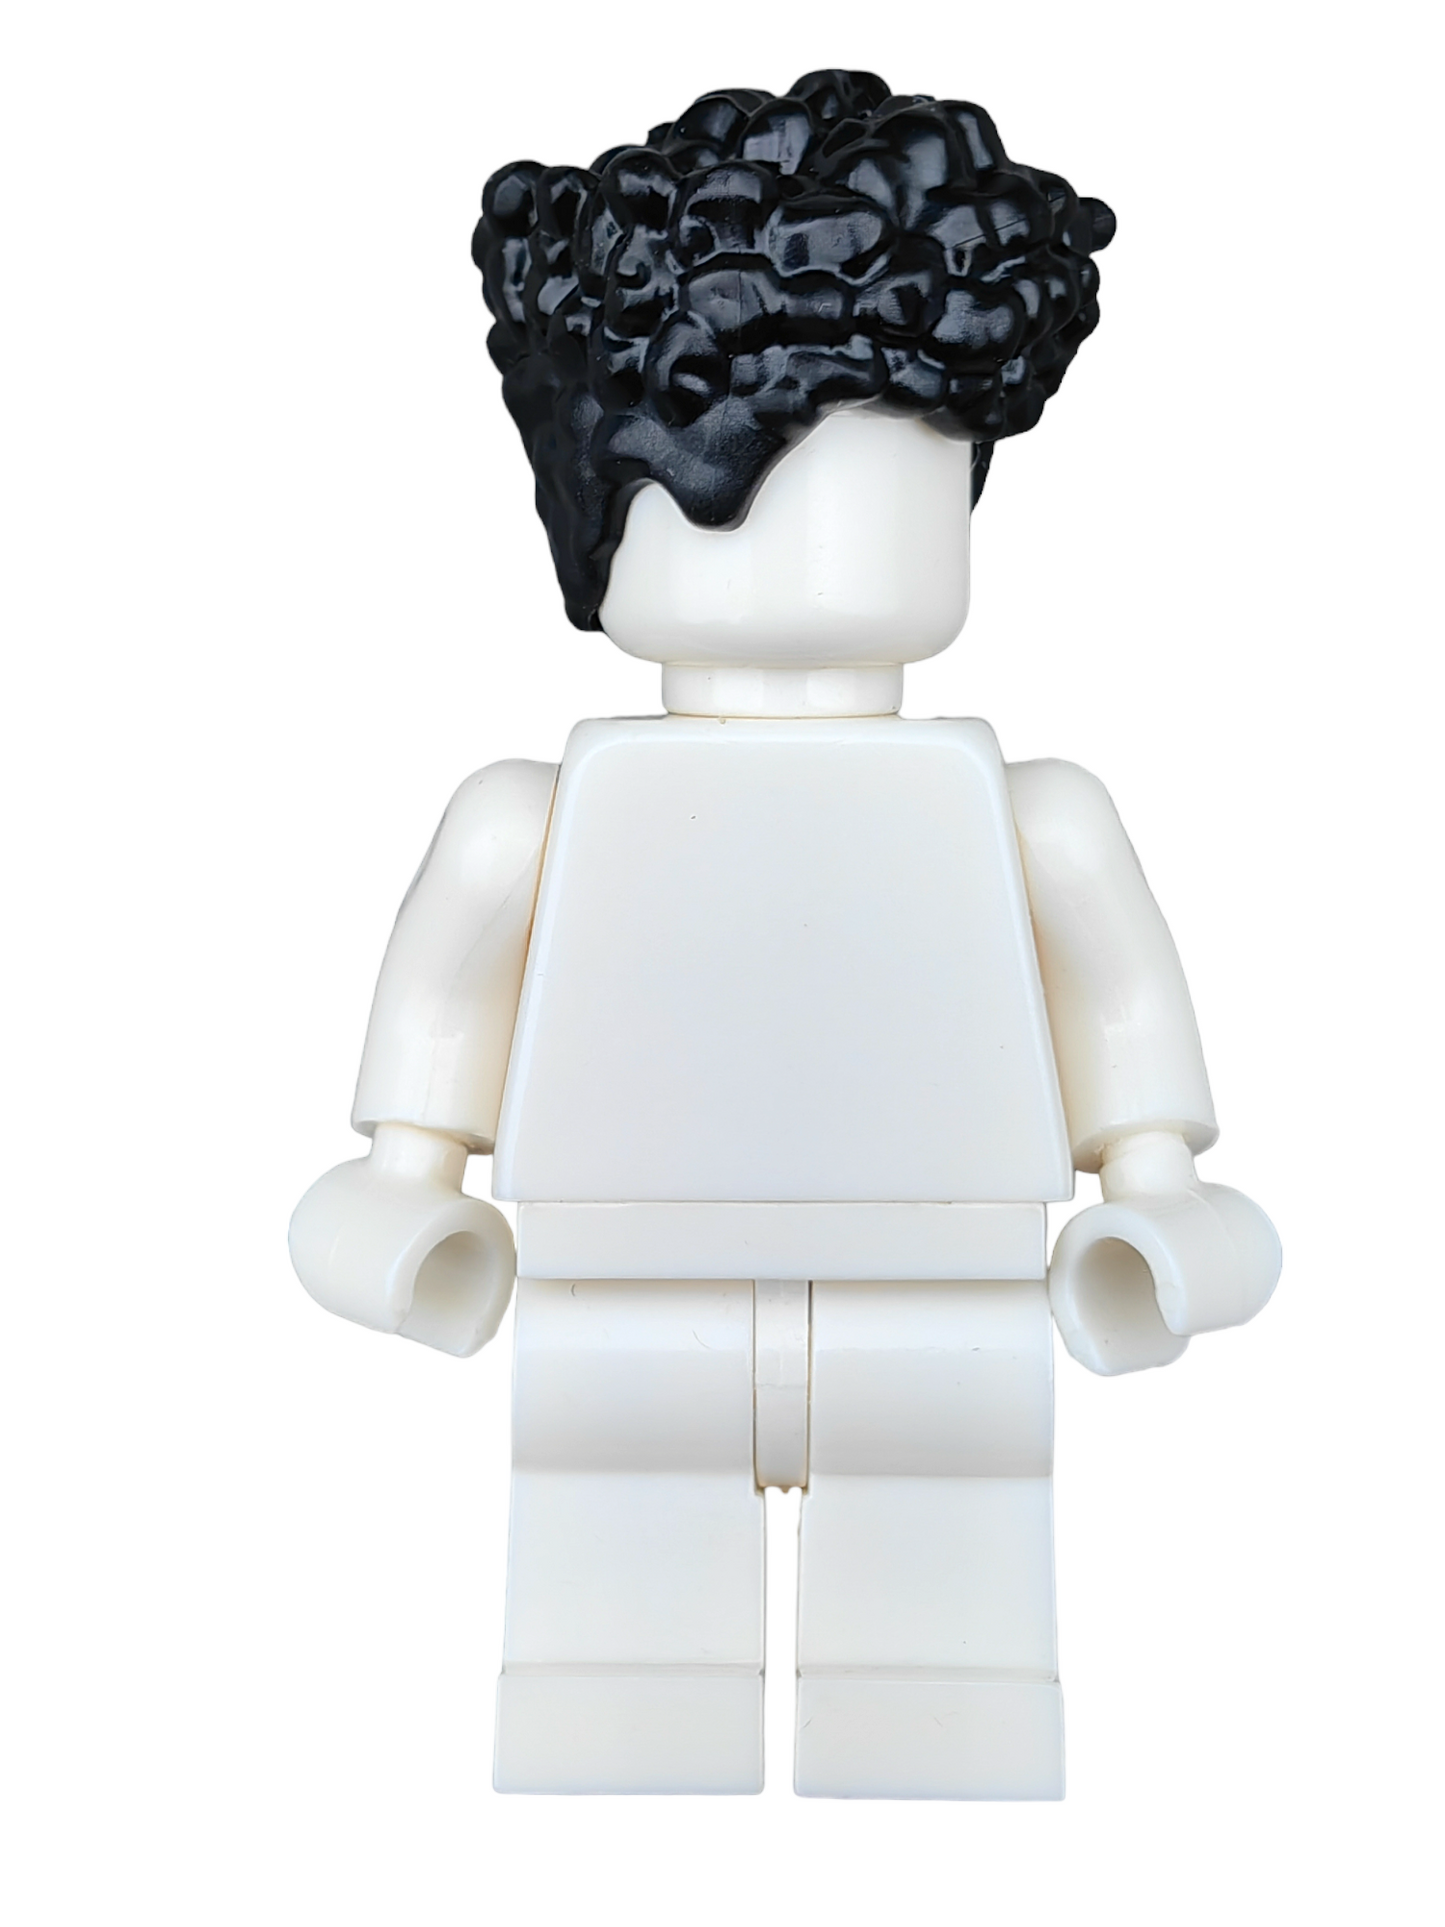 LEGO Wig, Black Hair Coiled and Medium Length -  UB1252